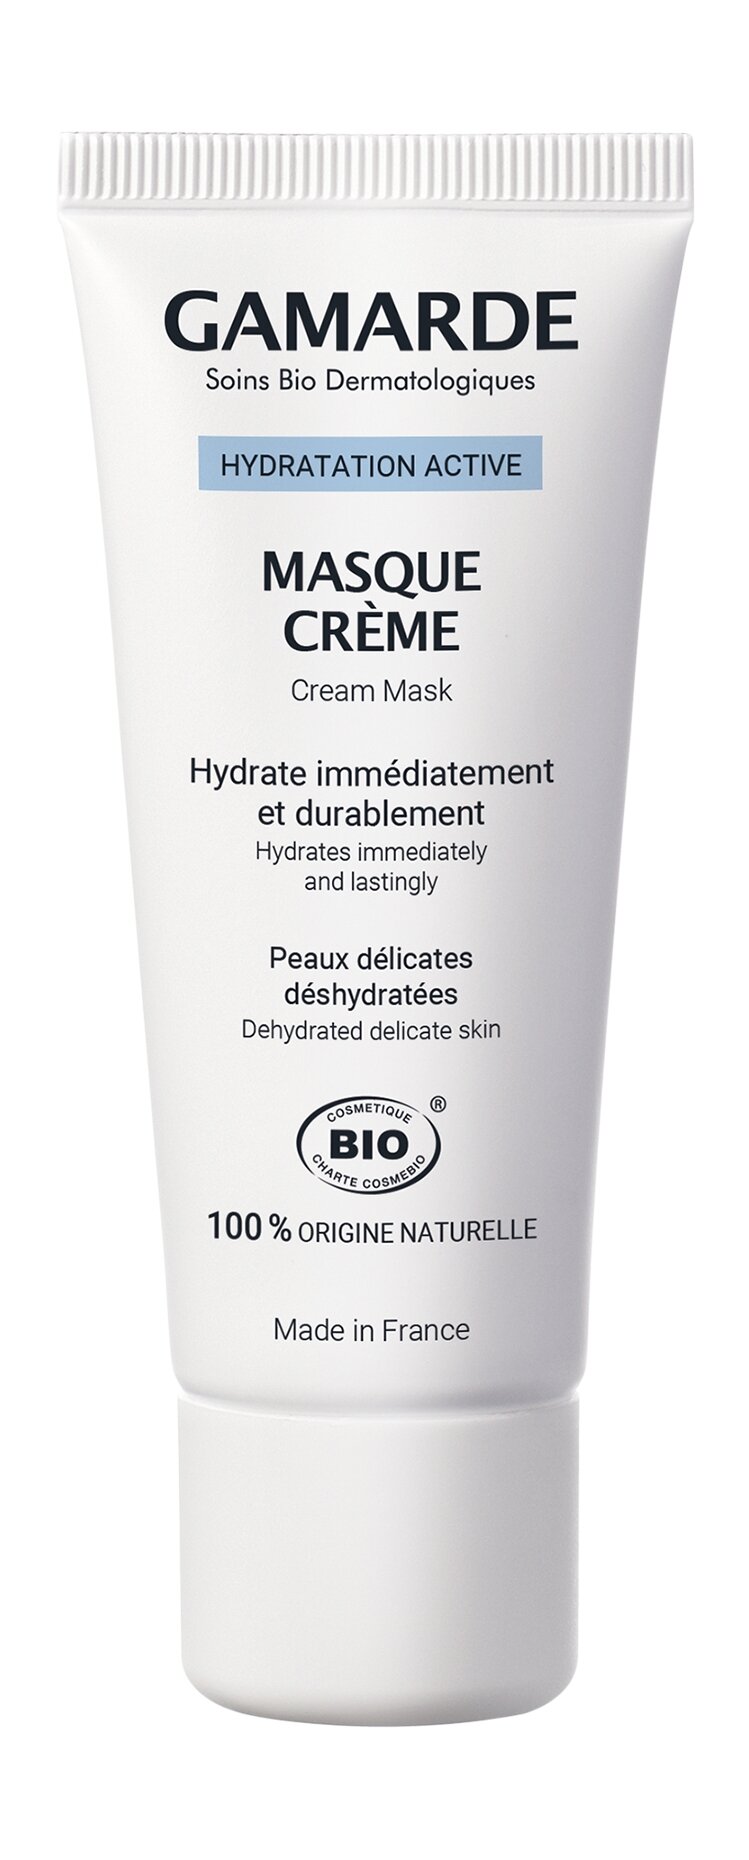 Увлажняющая крем-маска для лица с гиалуроновой кислотой Gamarde Hydratation Active Masque Crème 40 мл .